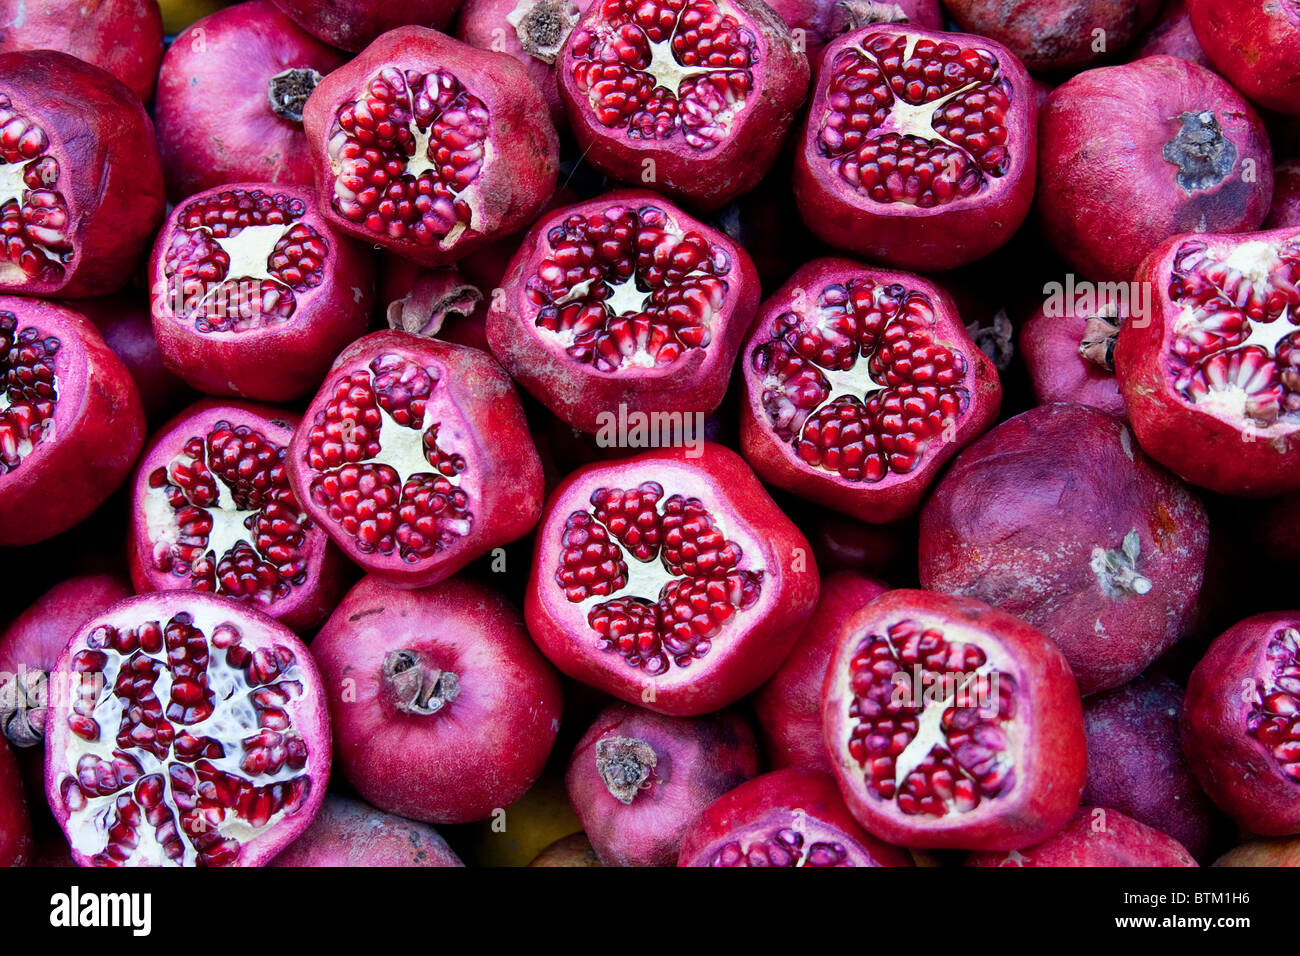 pomegranate, Stock Photo